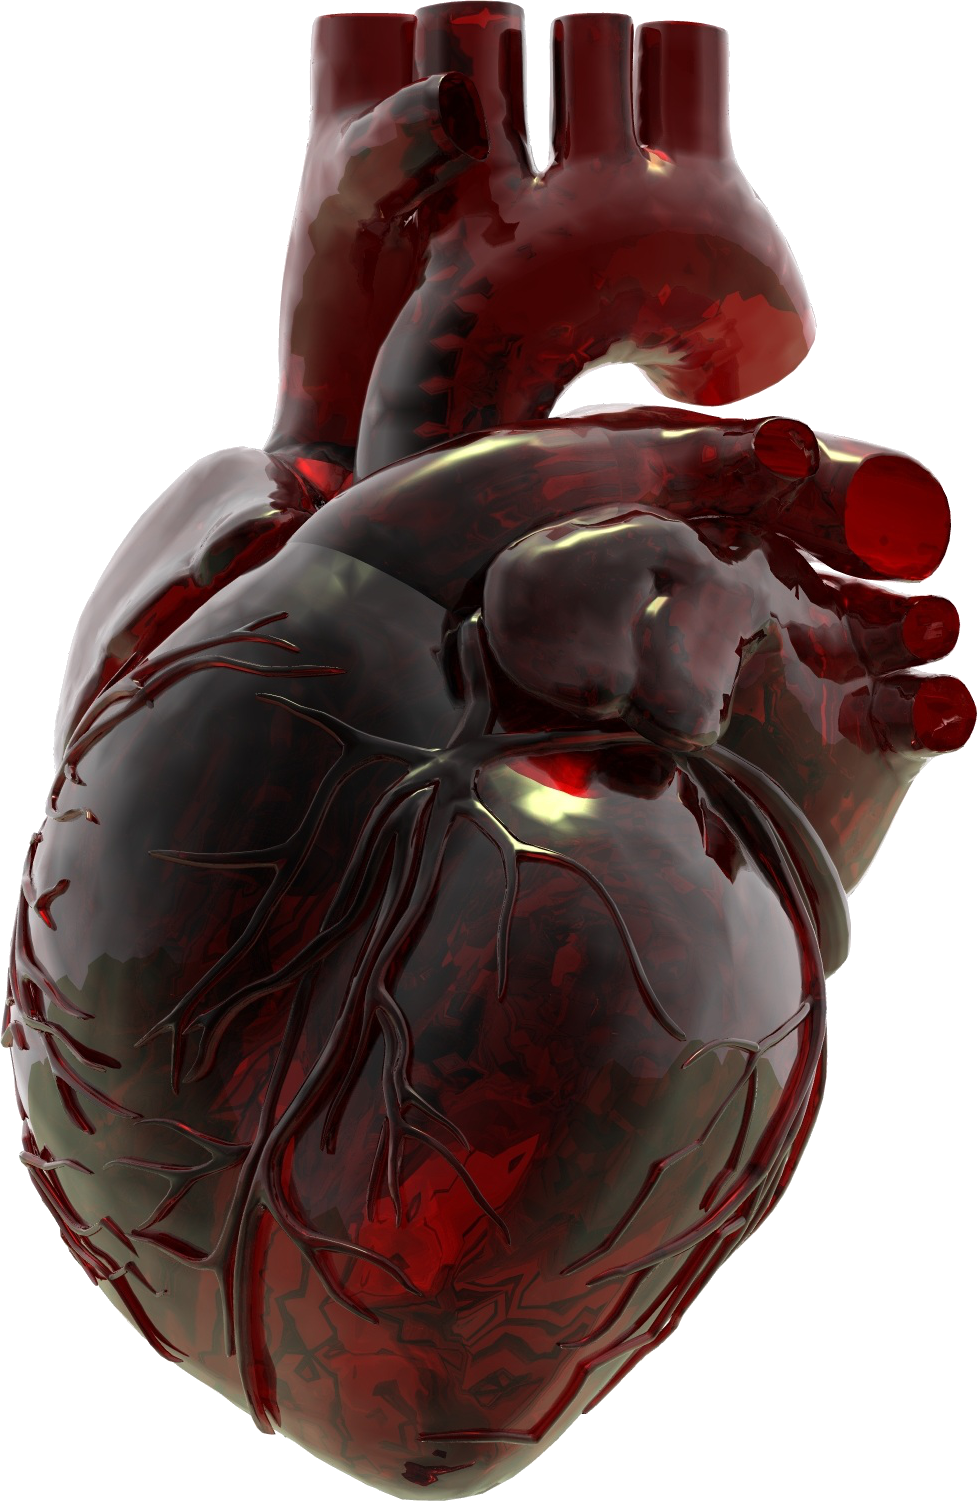 Imagen de PNG del corazón anatómico